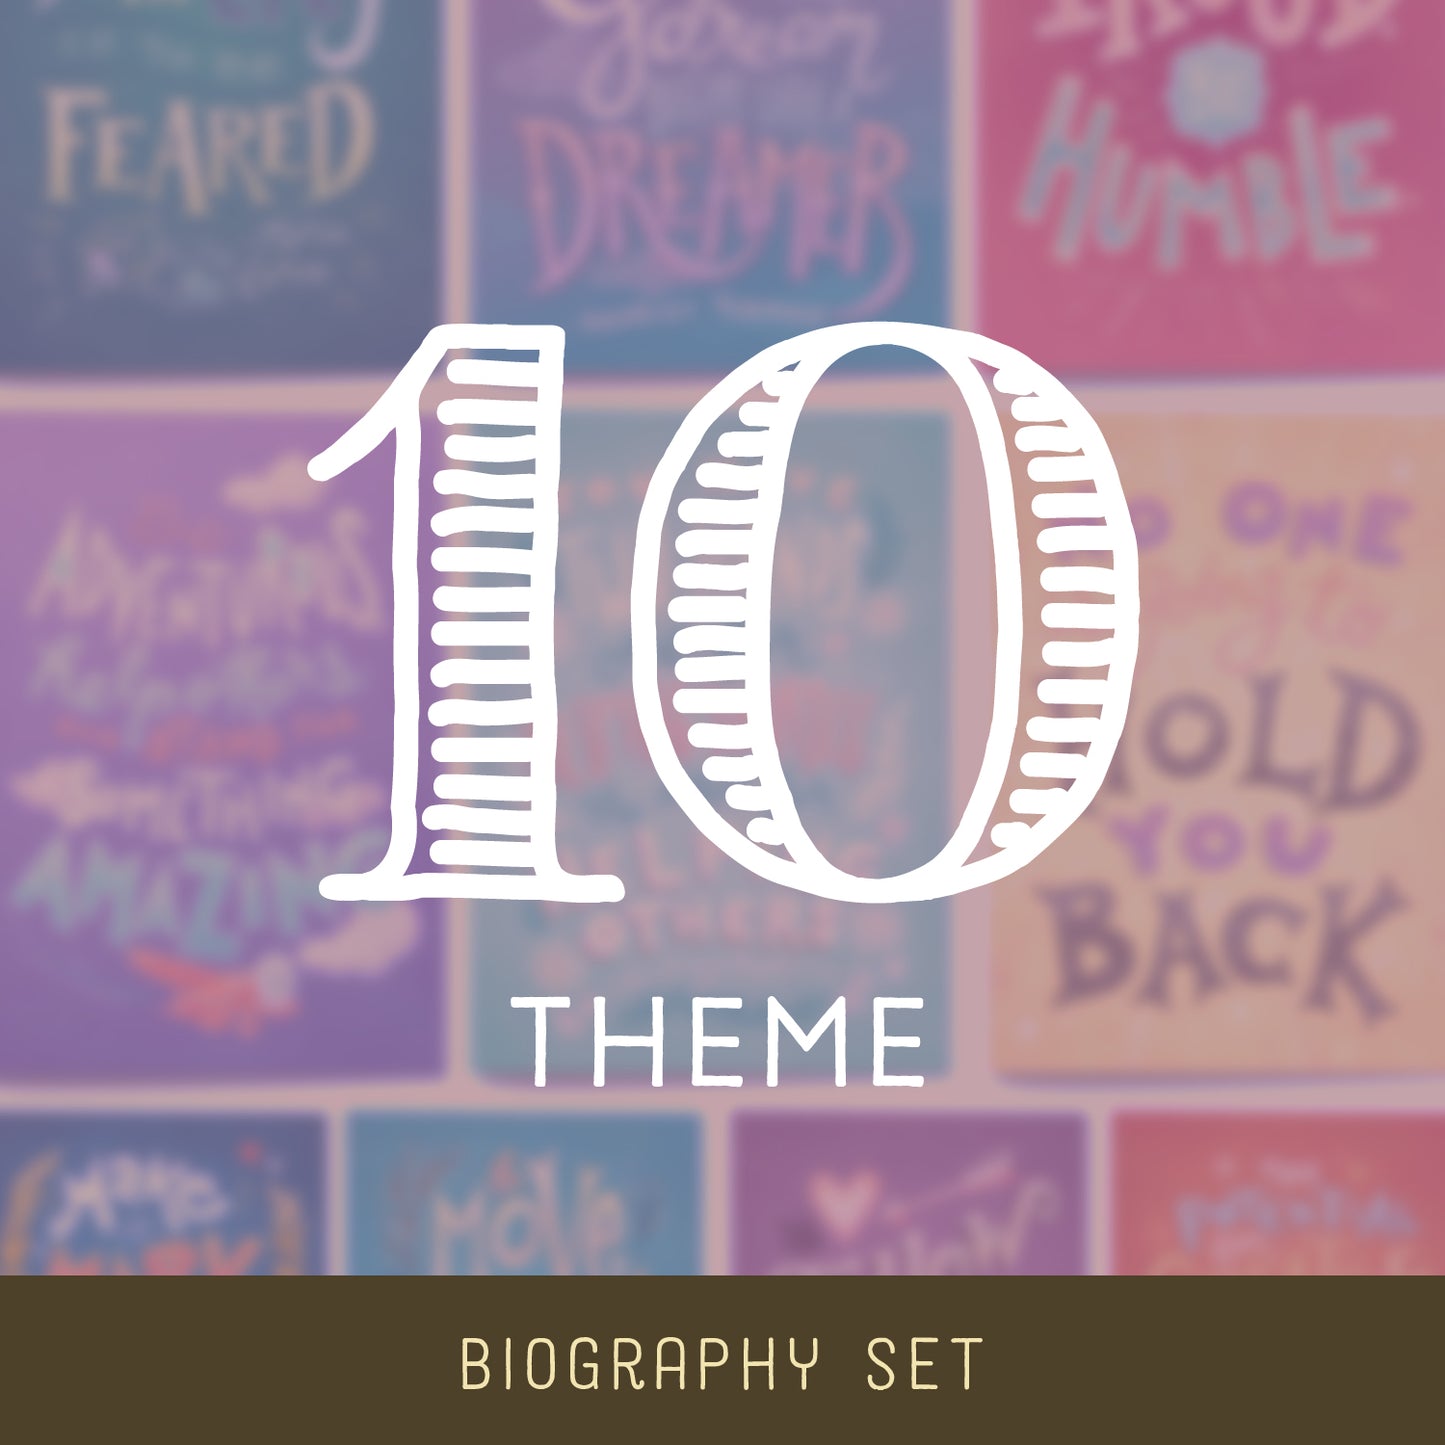 10-Theme | Biography Set